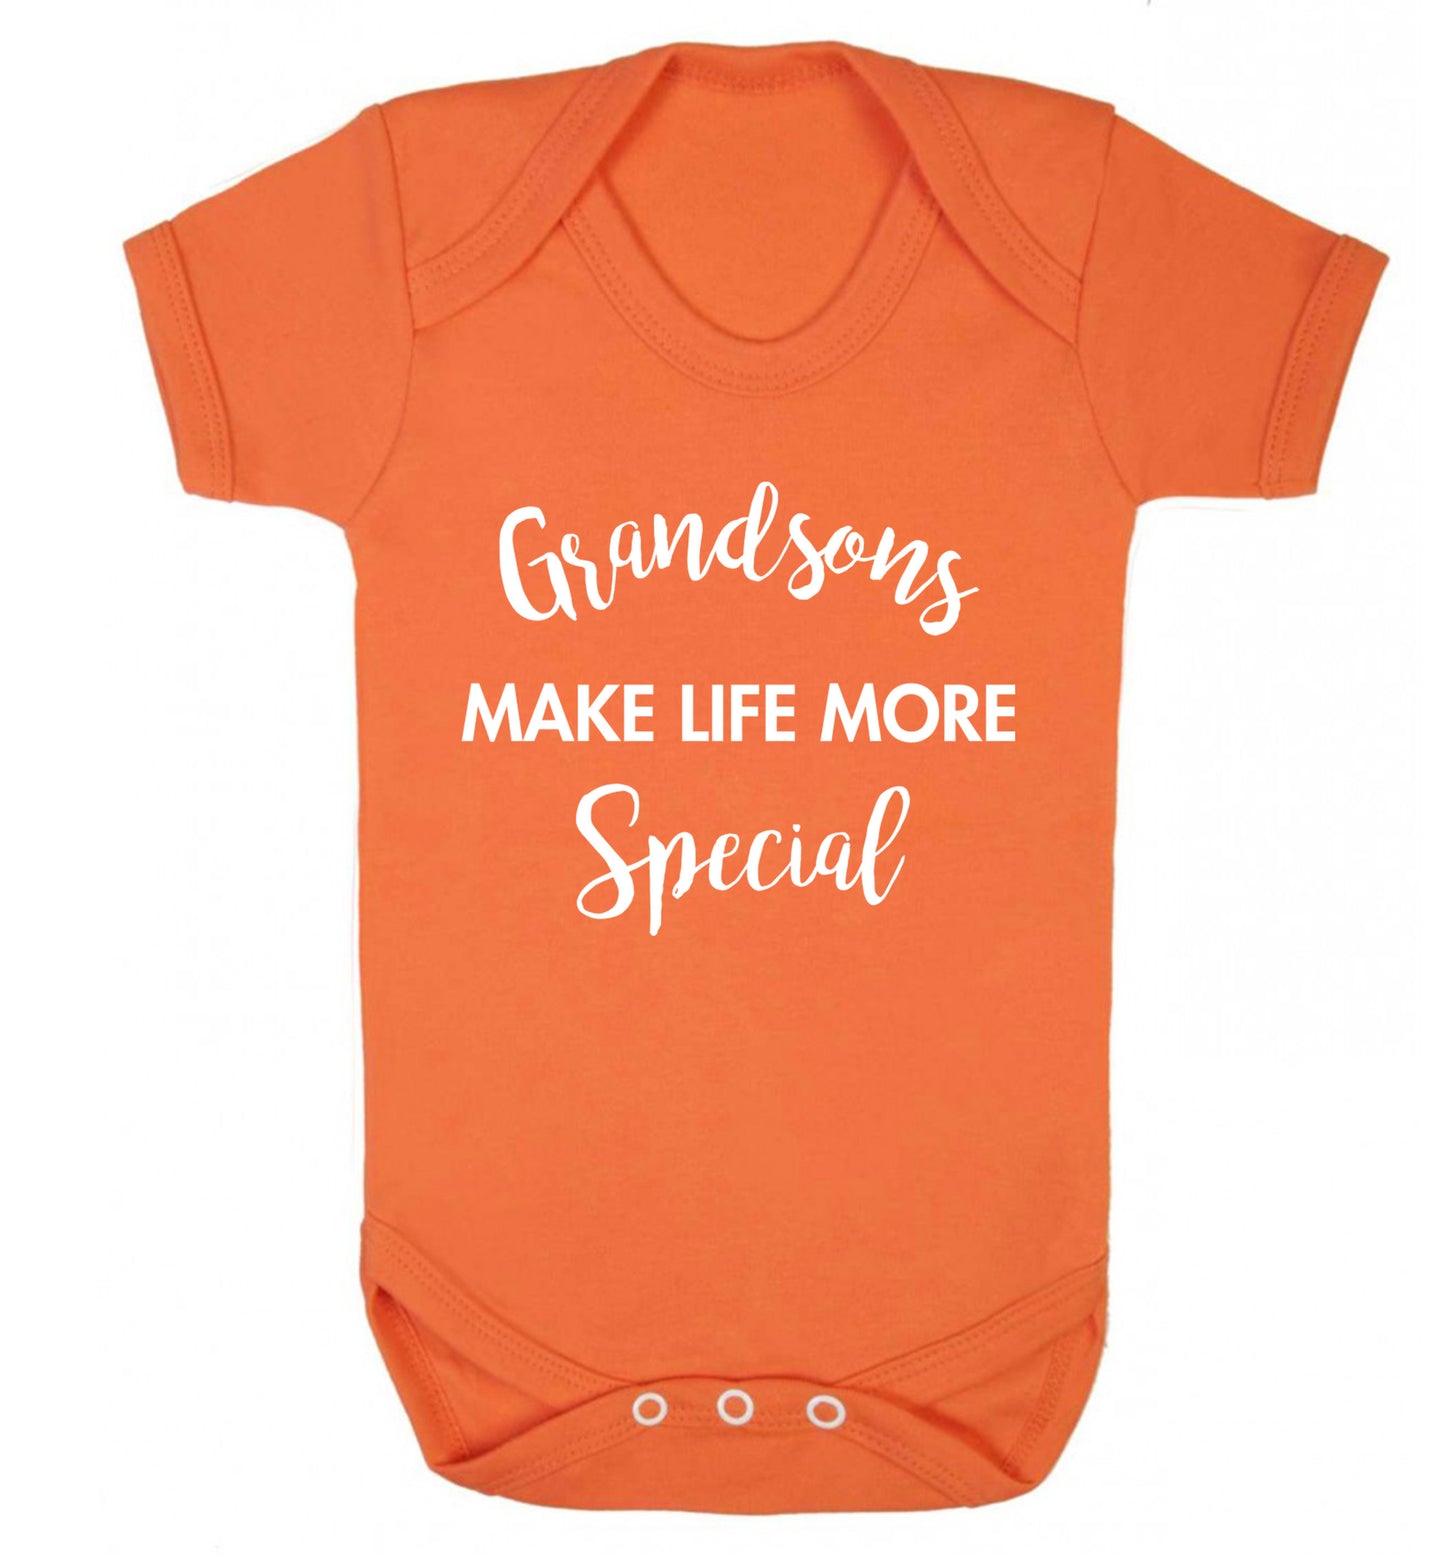 Grandsons make life more special Baby Vest orange 18-24 months